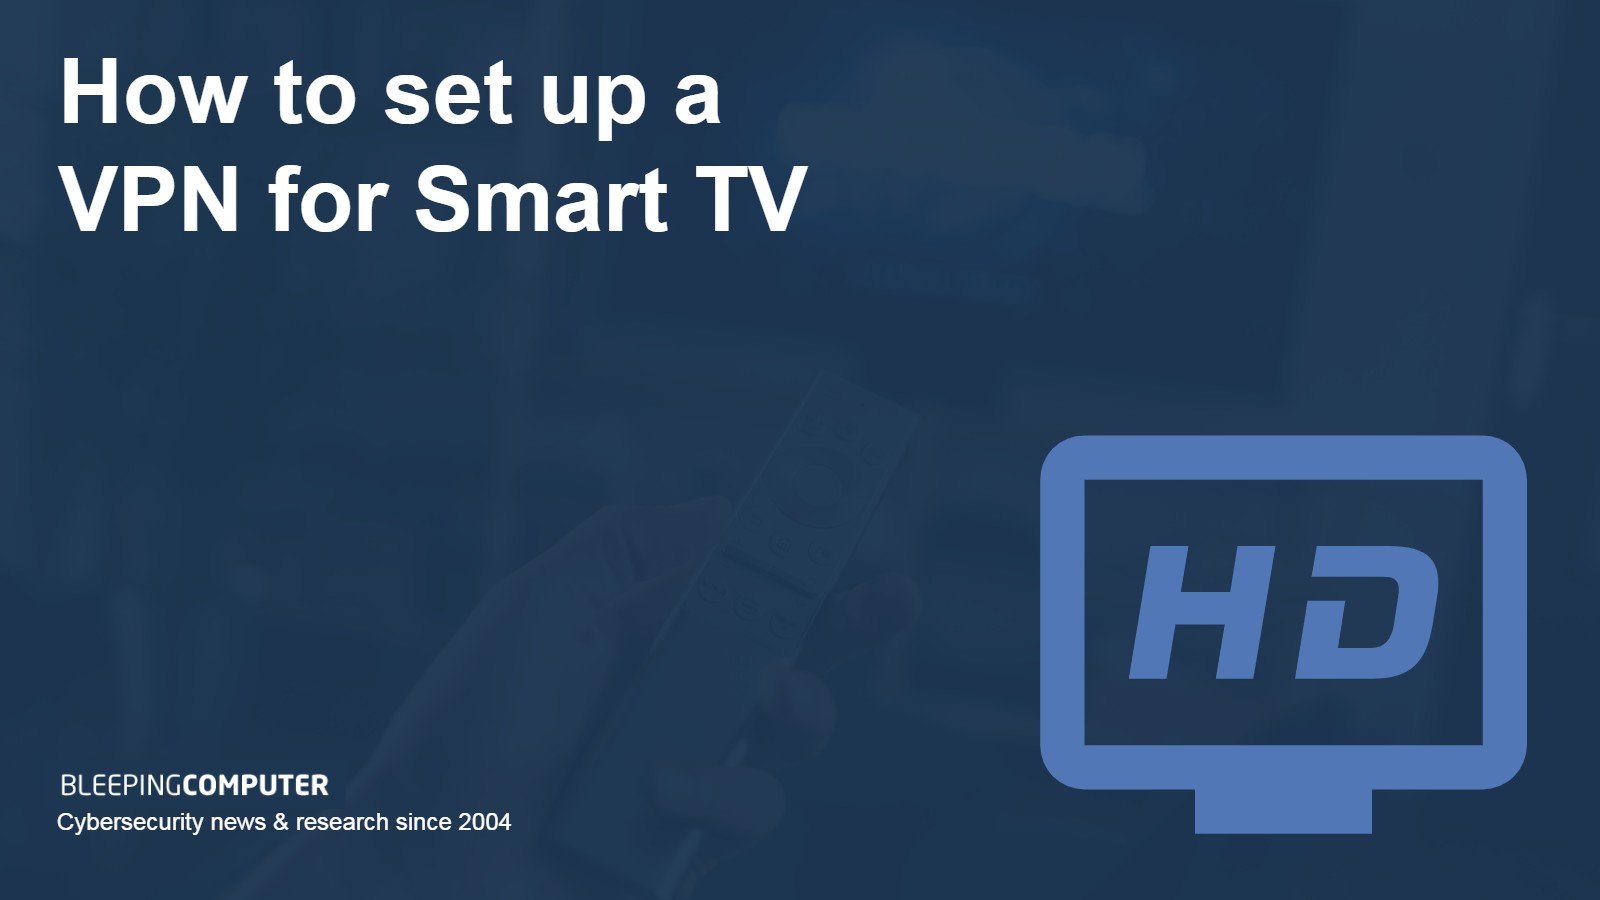 Activate: conecte sua conta de vídeos a sua smart TV